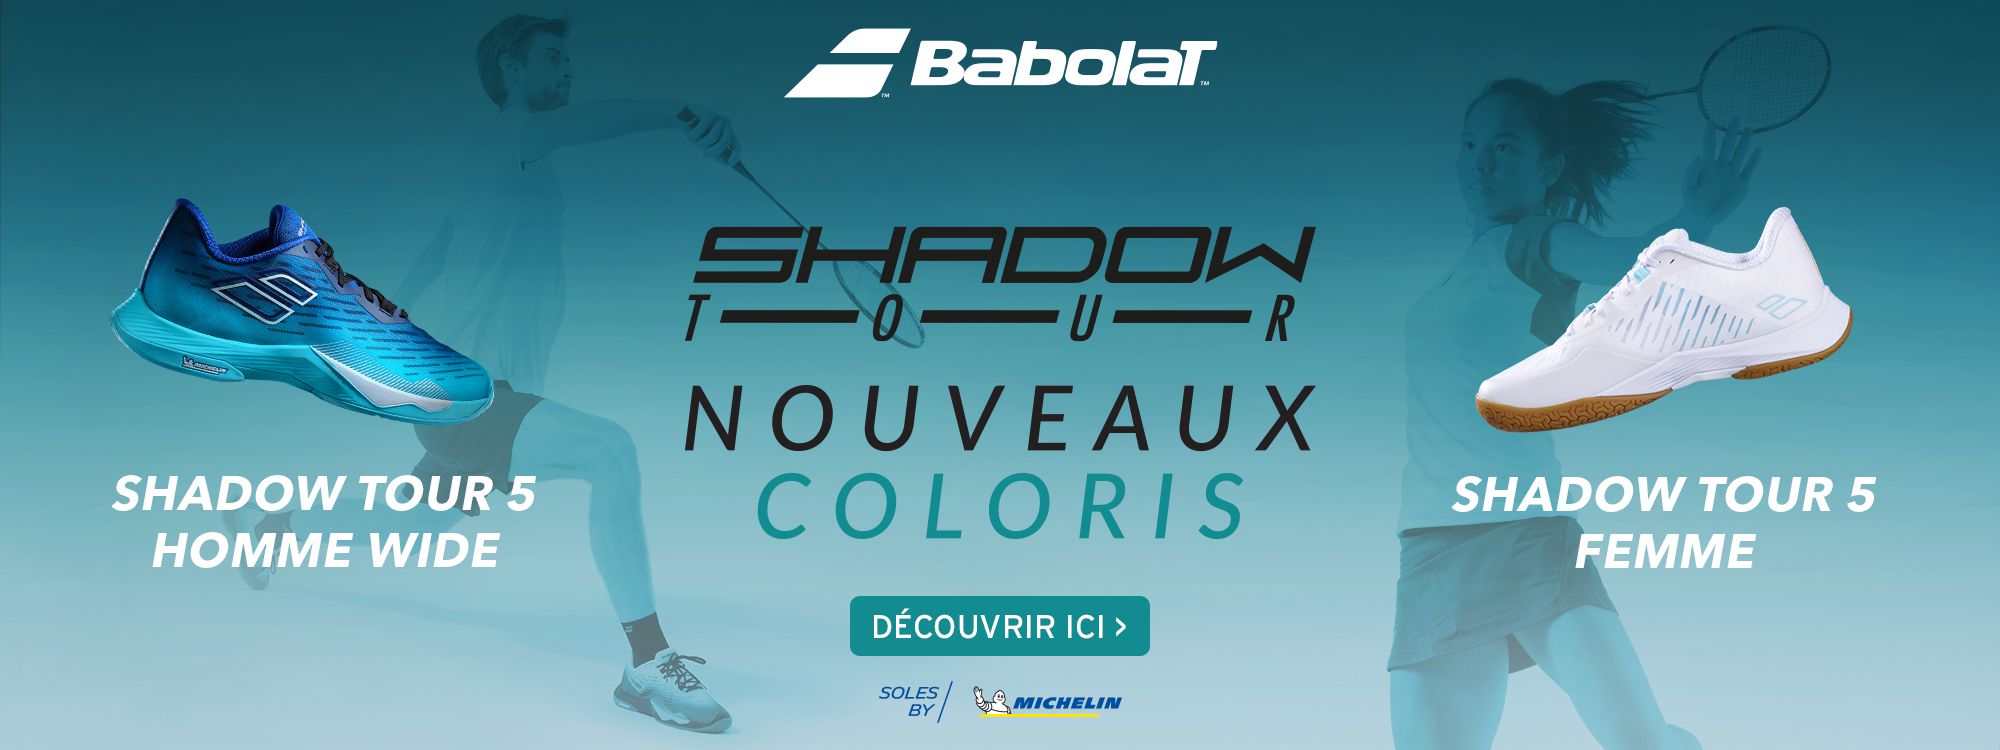 Babolat Shadow Tour 5